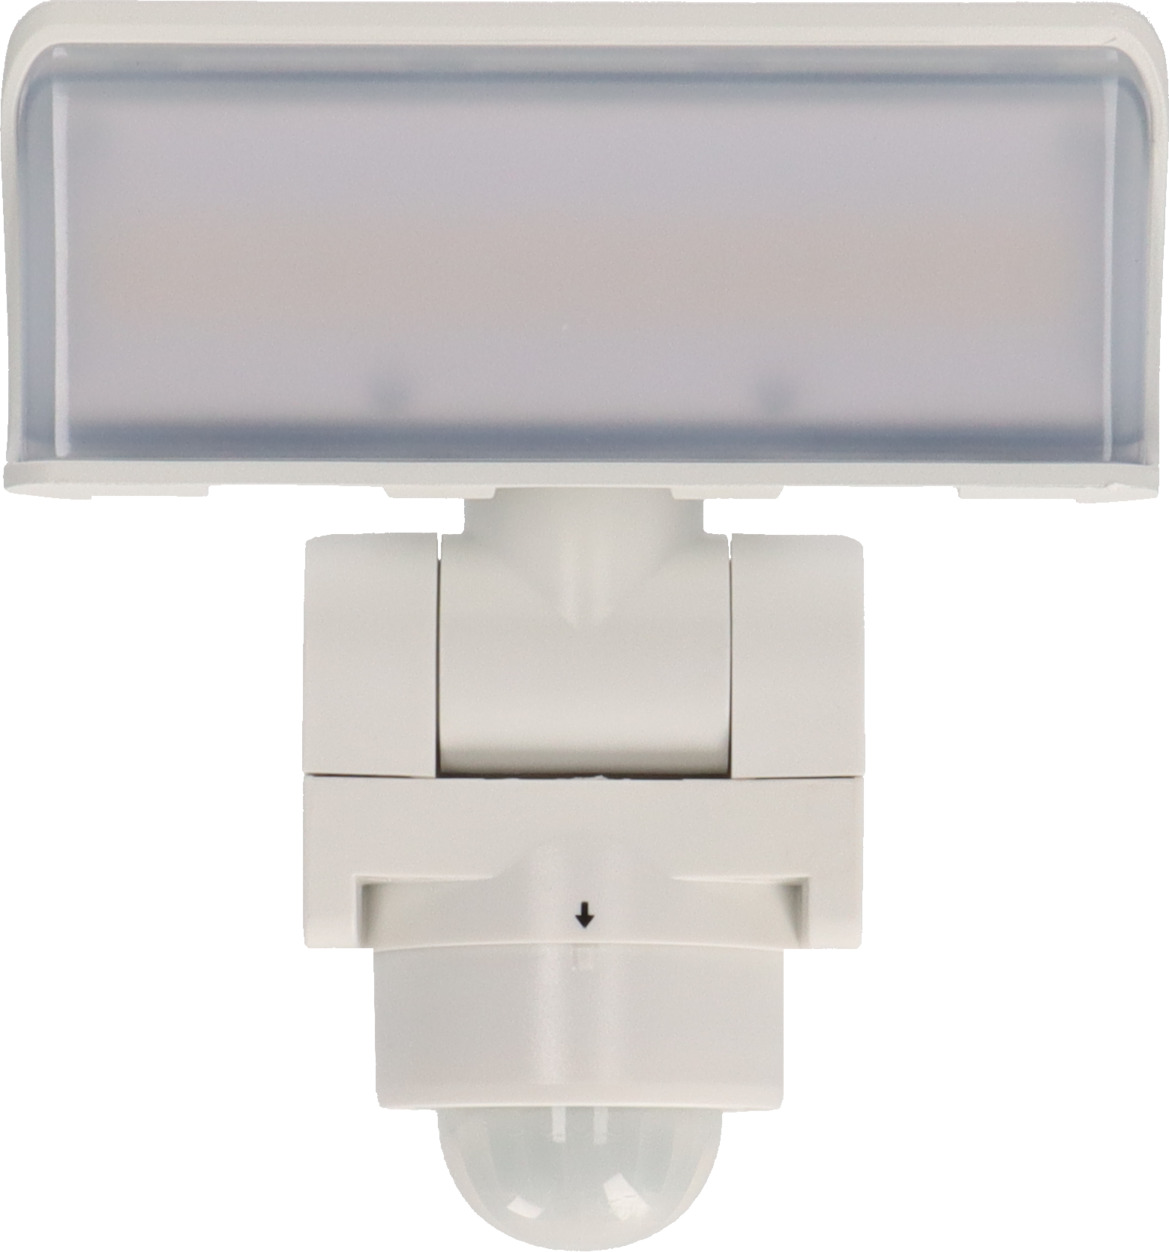 LED Strahler WS 2050 | brennenstuhl® weiß 1680lm, IP44, mit Bewegungsmelder, WP